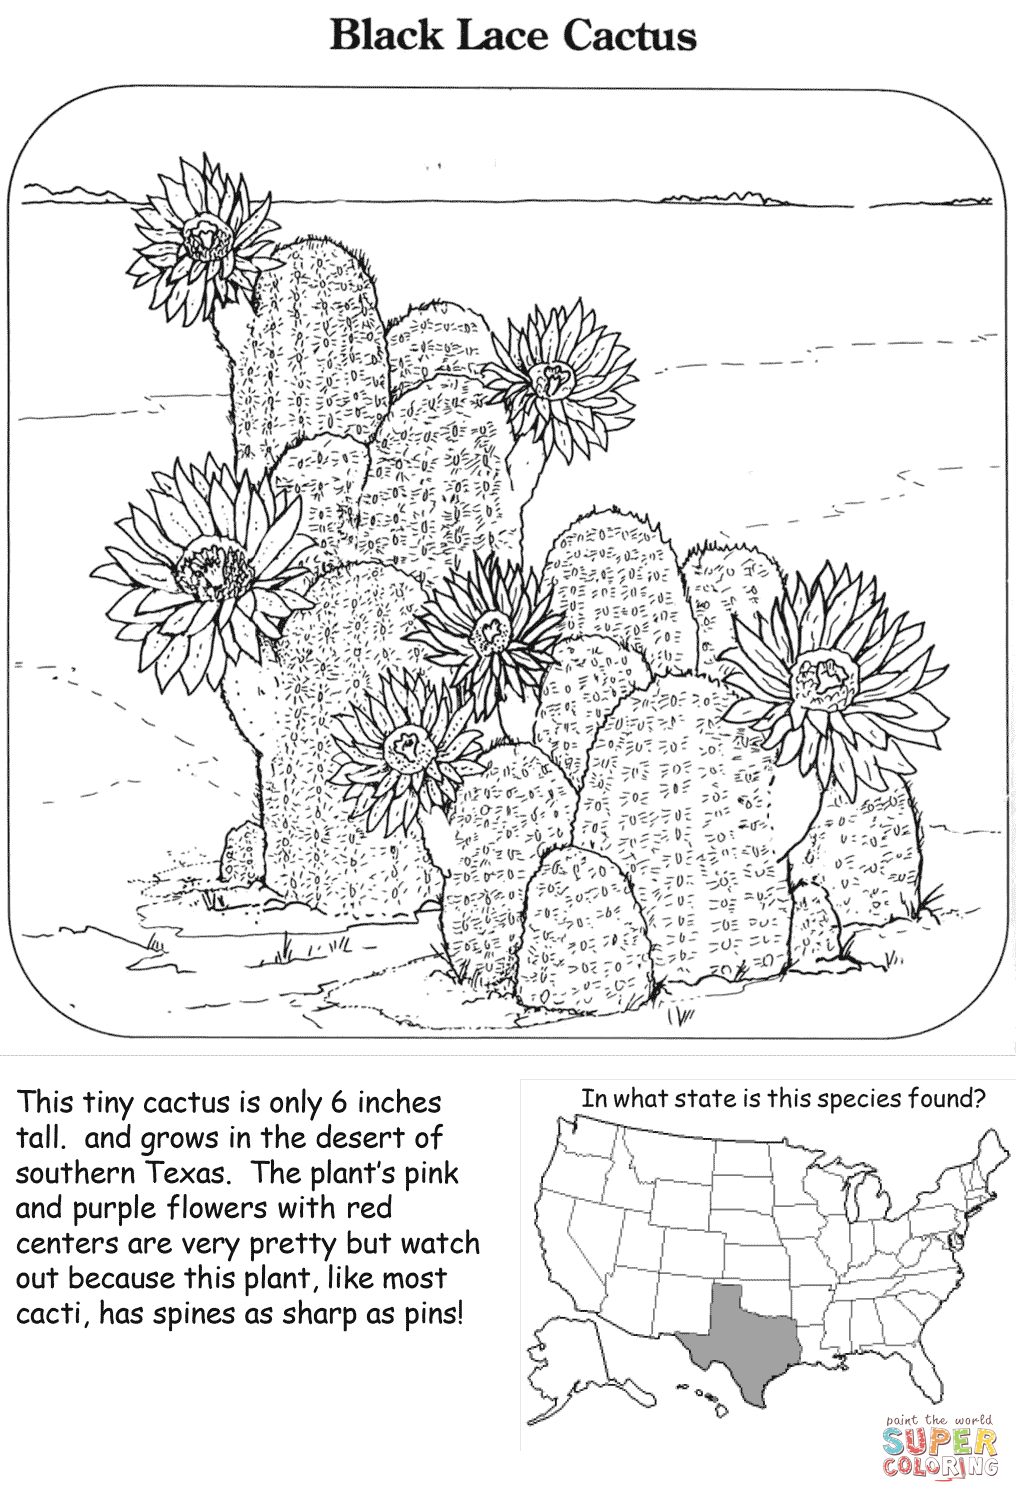 Cactus di pizzo nero di Cactus